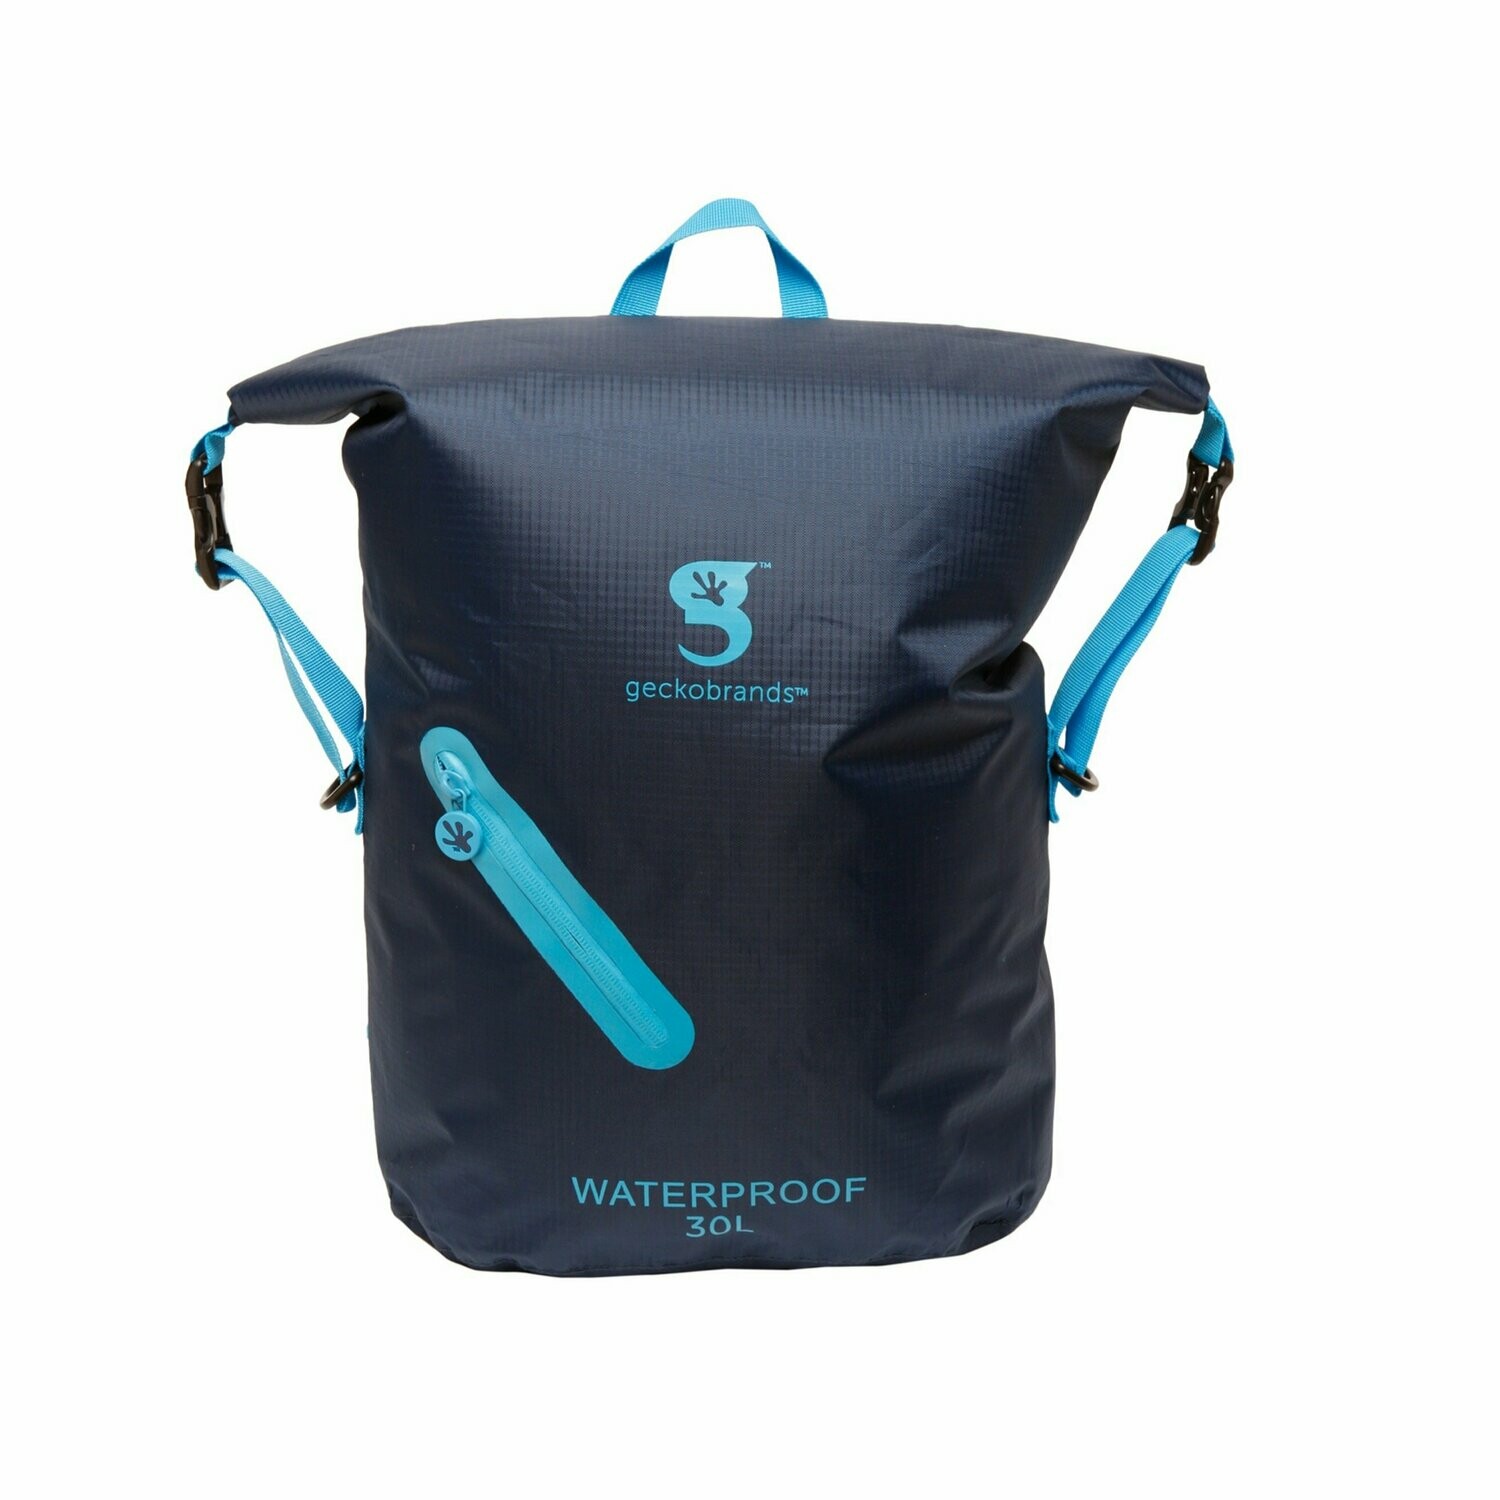 geckobrands Waterproof Lightweight Backpack 30L